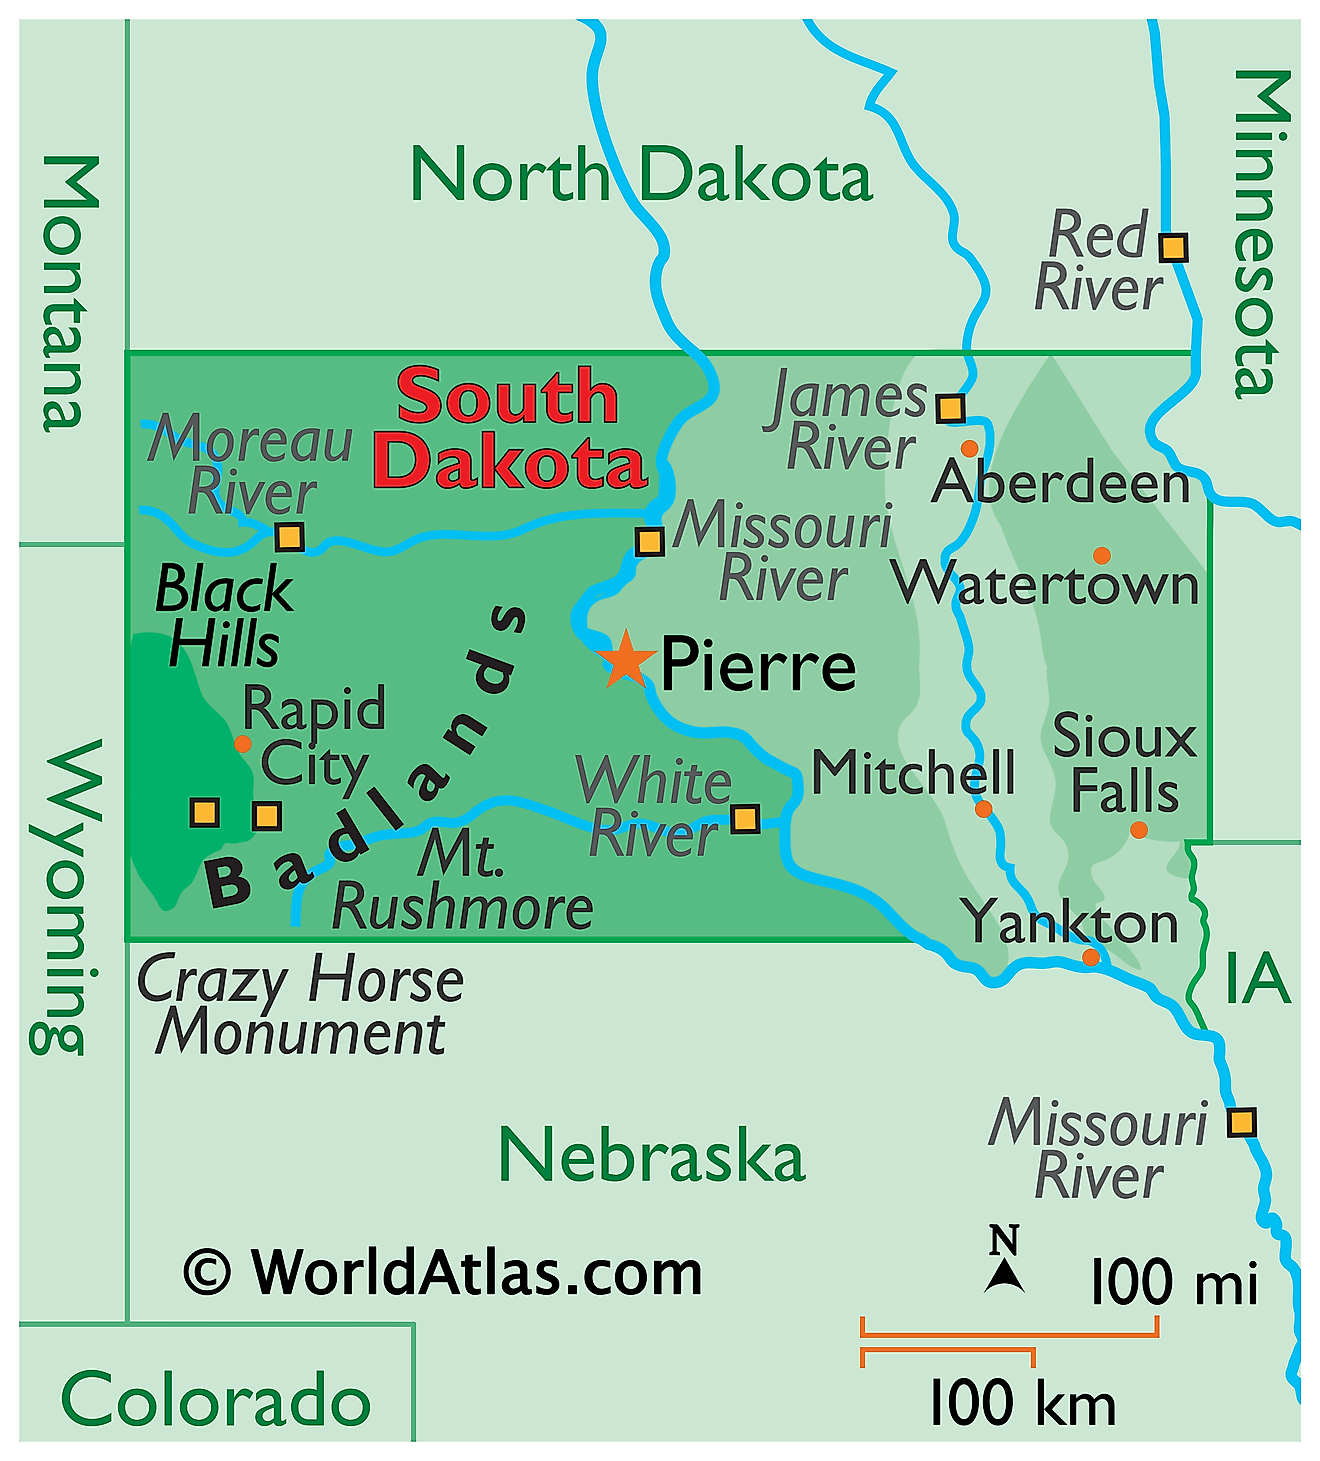 Mapa Físico de Dakota del Sur. Muestra las características físicas de Dakota del Sur, incluidas sus cadenas montañosas, los principales ríos y lagos.